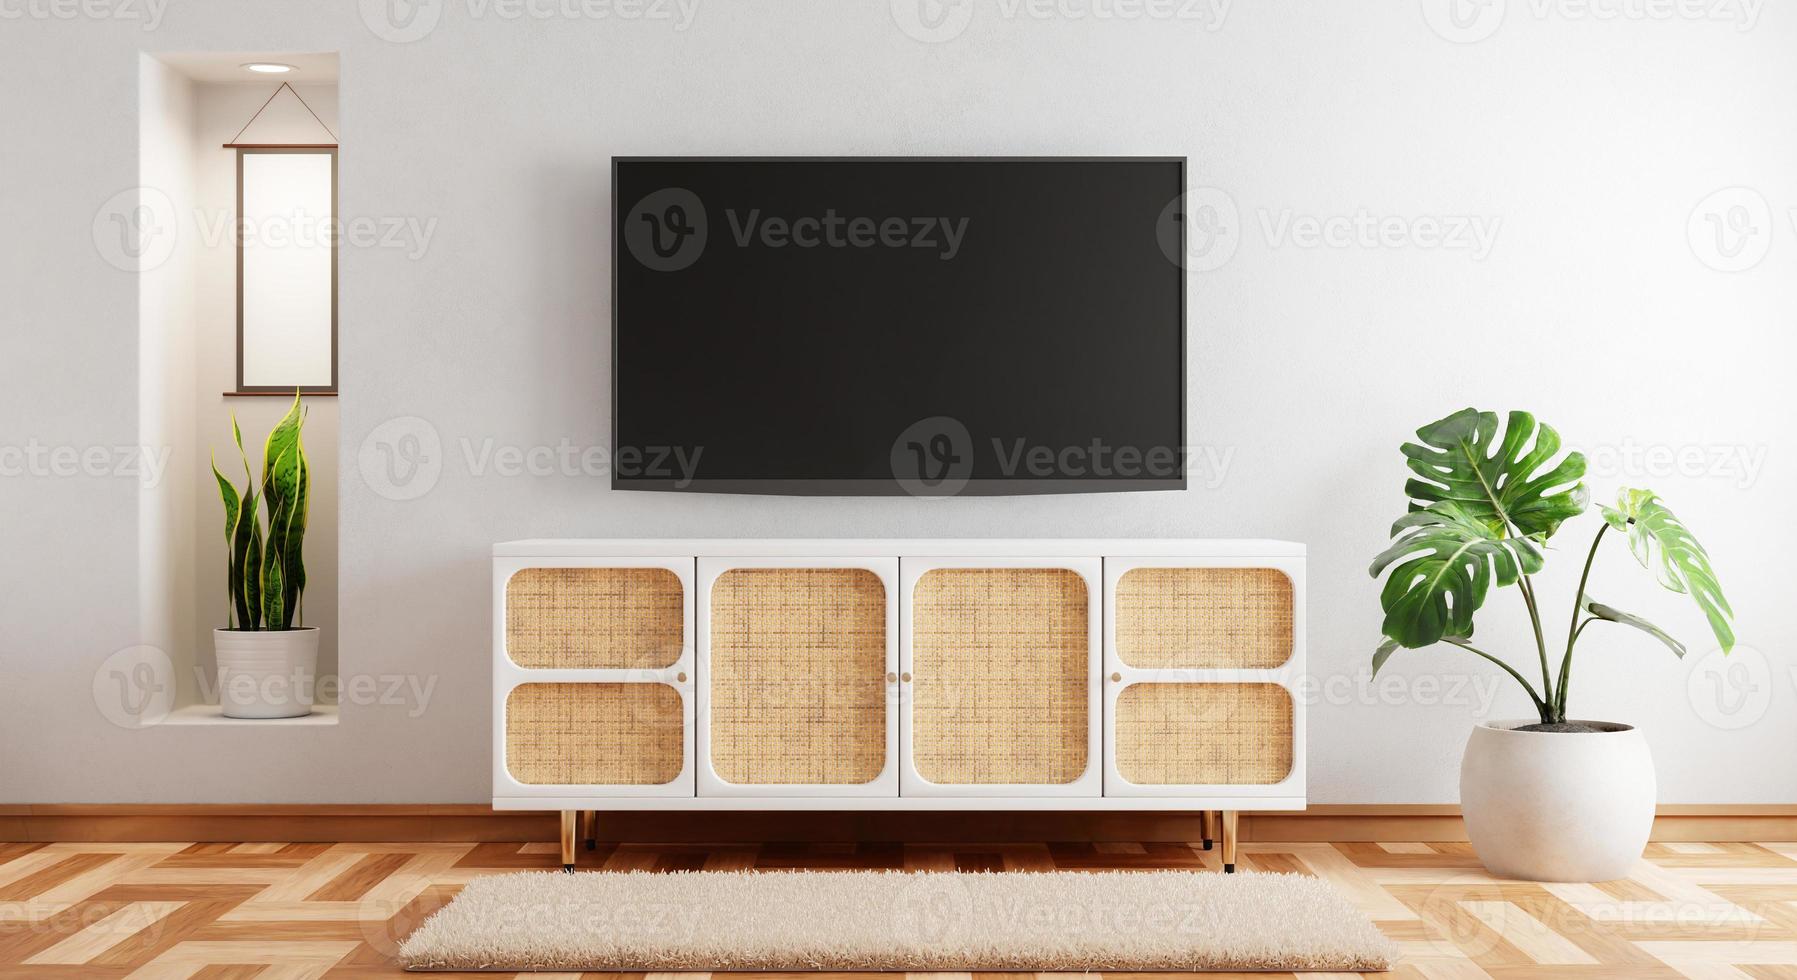 tv acima do armário de madeira na moderna sala vazia com tapete de plantas em fundo de madeira. tema de estilo japonês. arquitetura e conceito de interiores. renderização de ilustração 3D foto